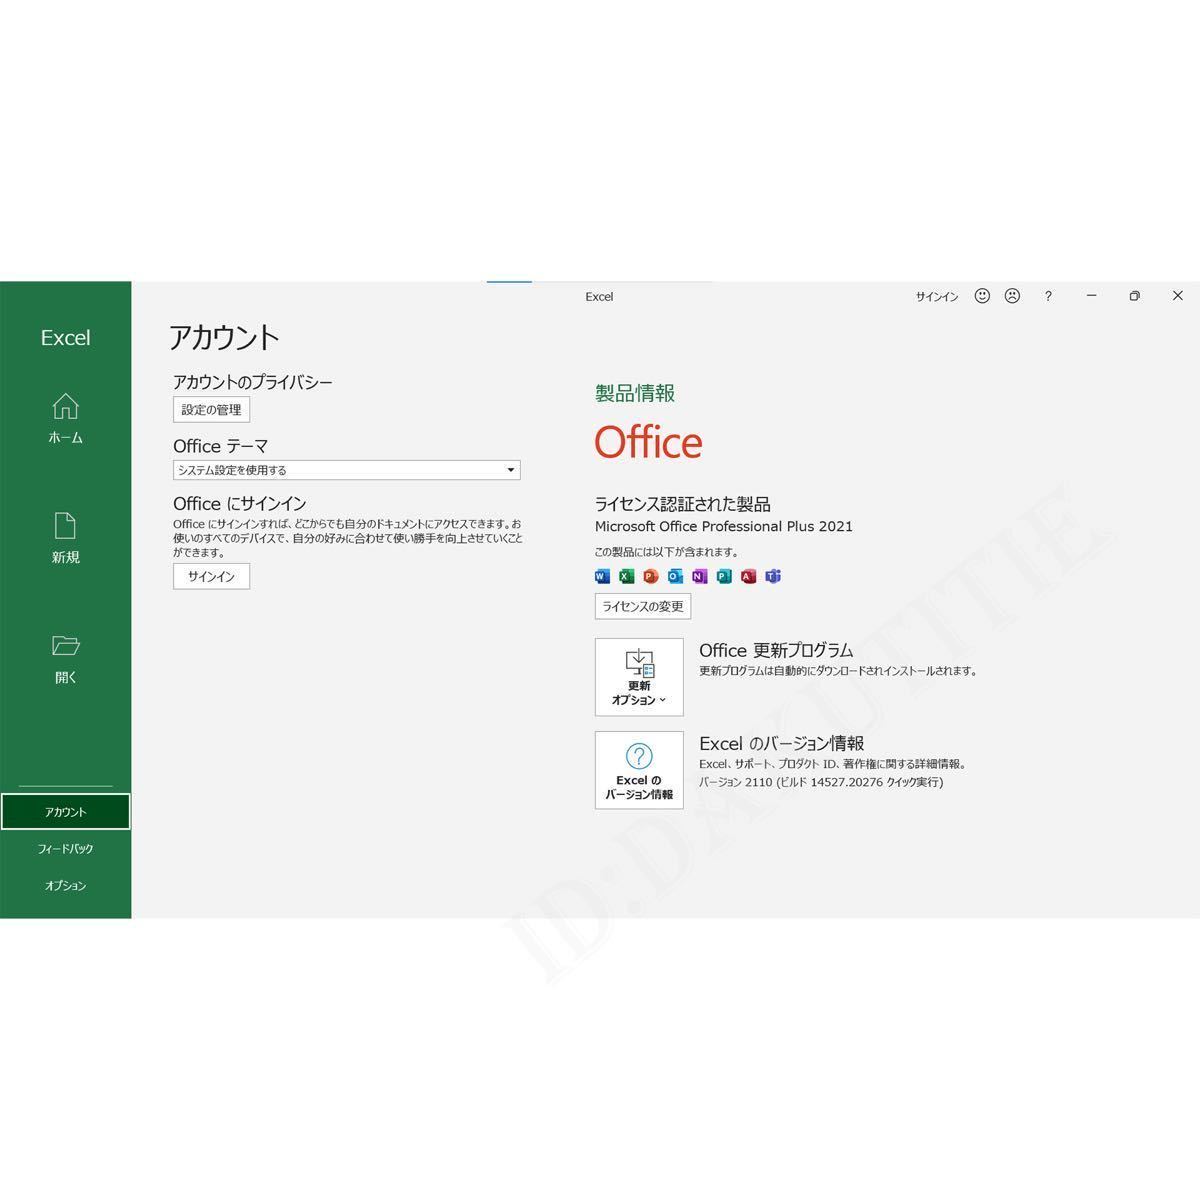 【最新版認証保証】Microsoft Office 2021 Professional Plus オフィス2021 プロダクトキー Word Excel 日本語版 手順書あり3_画像6